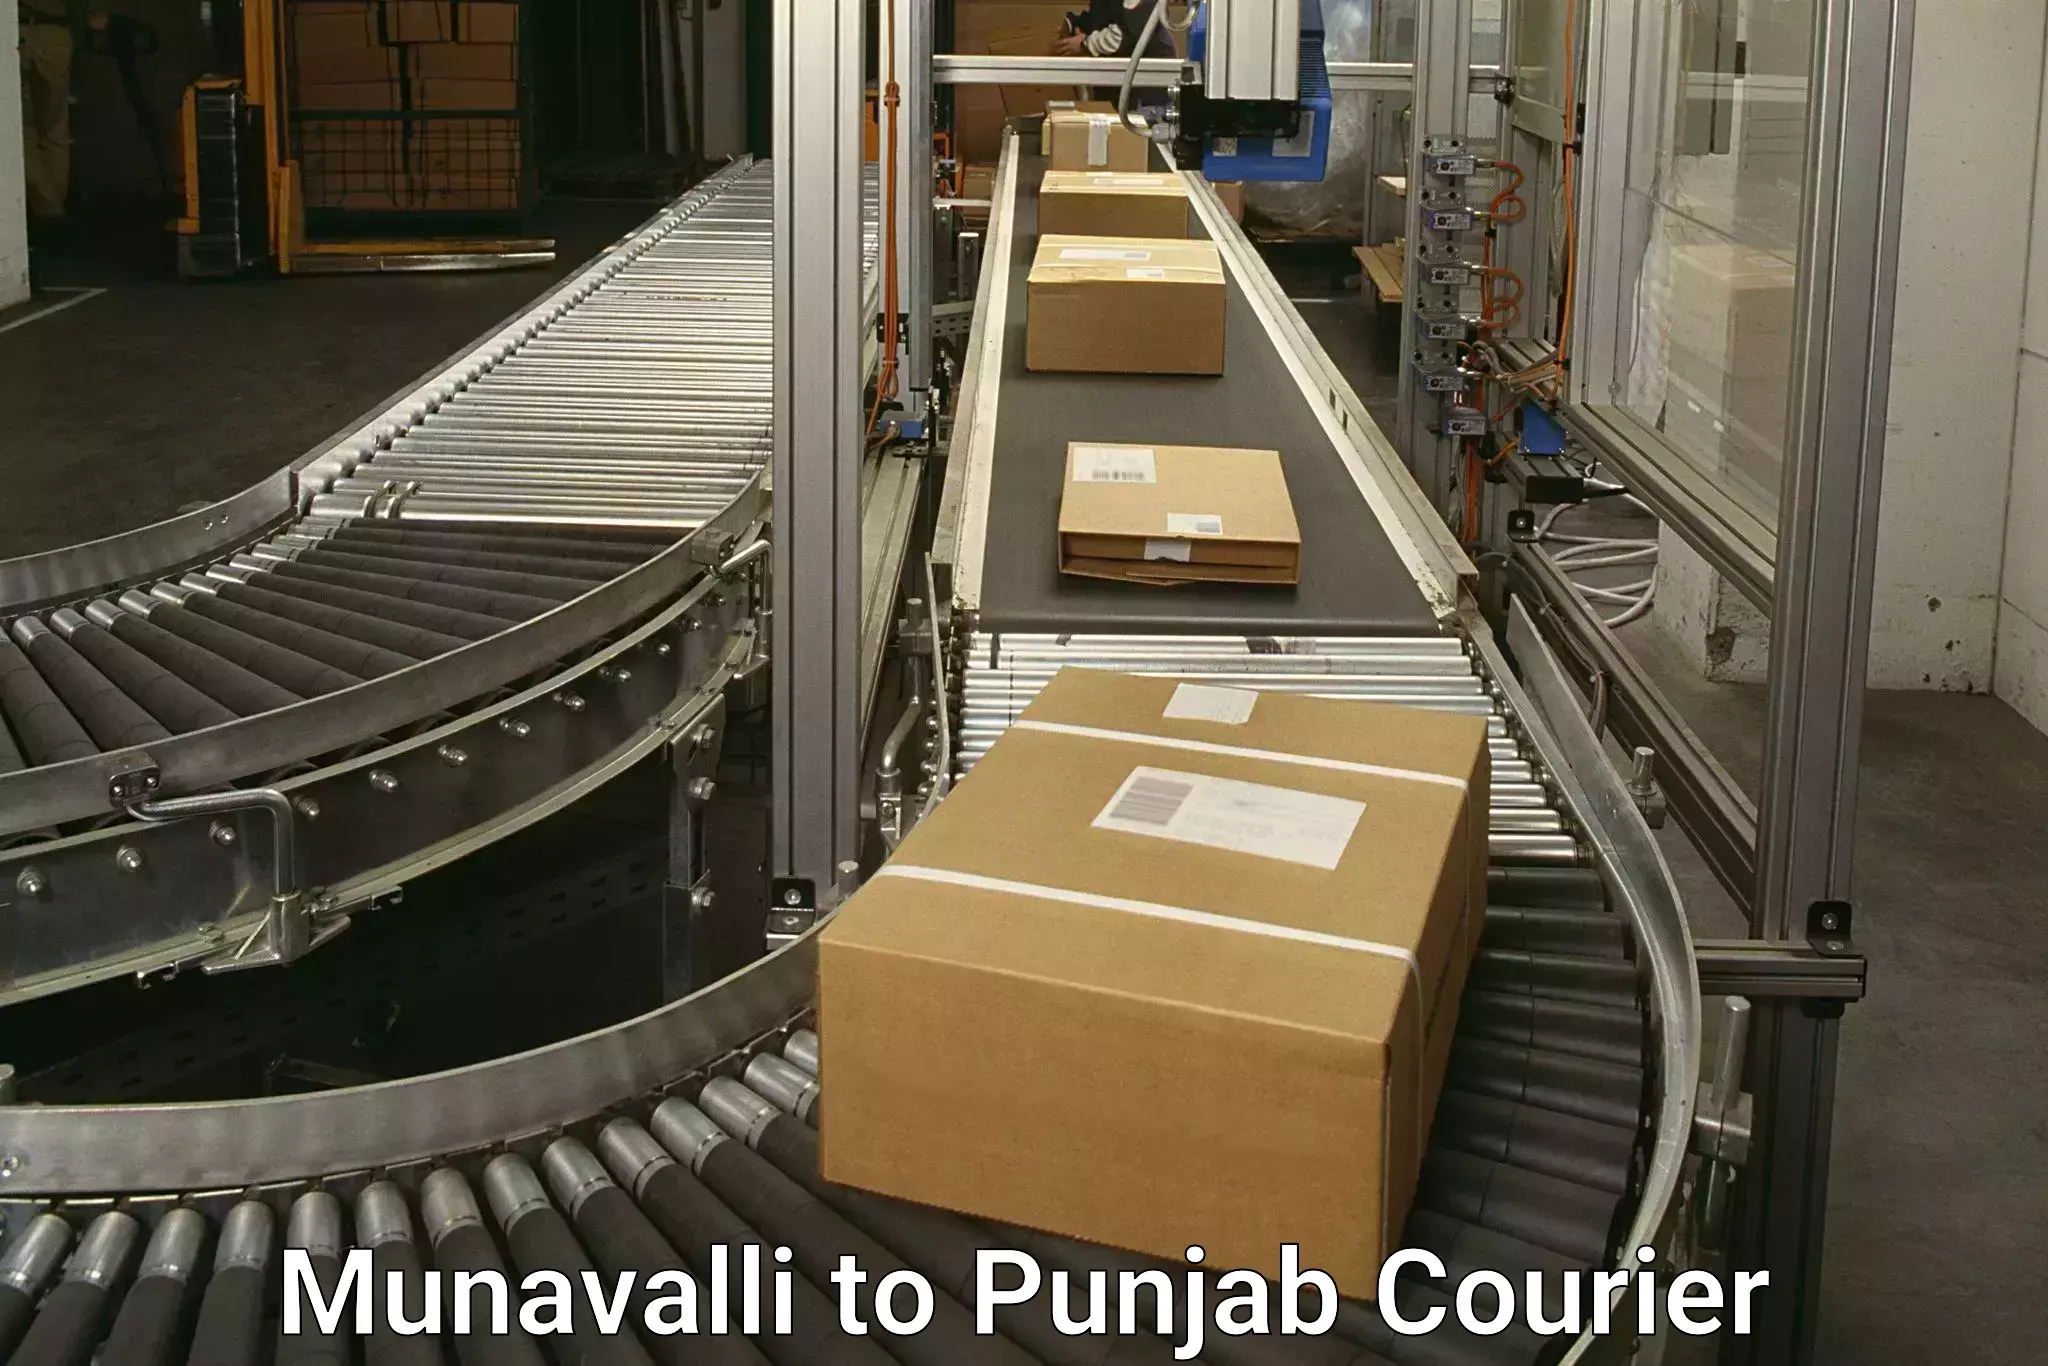 Courier service comparison Munavalli to Zirakpur